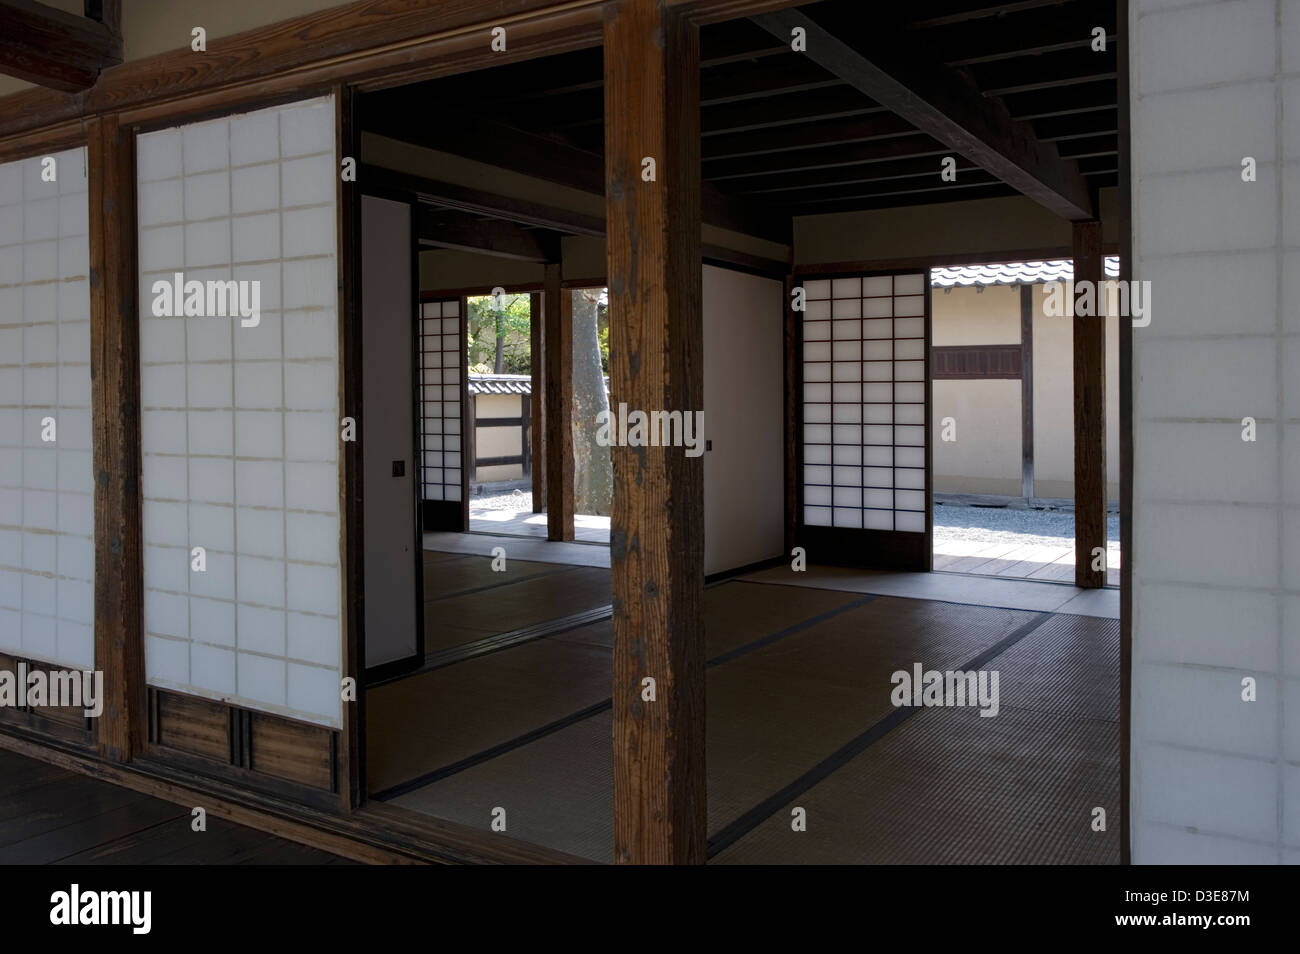 Les tatami et papier shoji écrans sont des éléments traditionnels de campagne à l'école dans des bâtiments Bunbu Matsushiro, Nagano. Banque D'Images